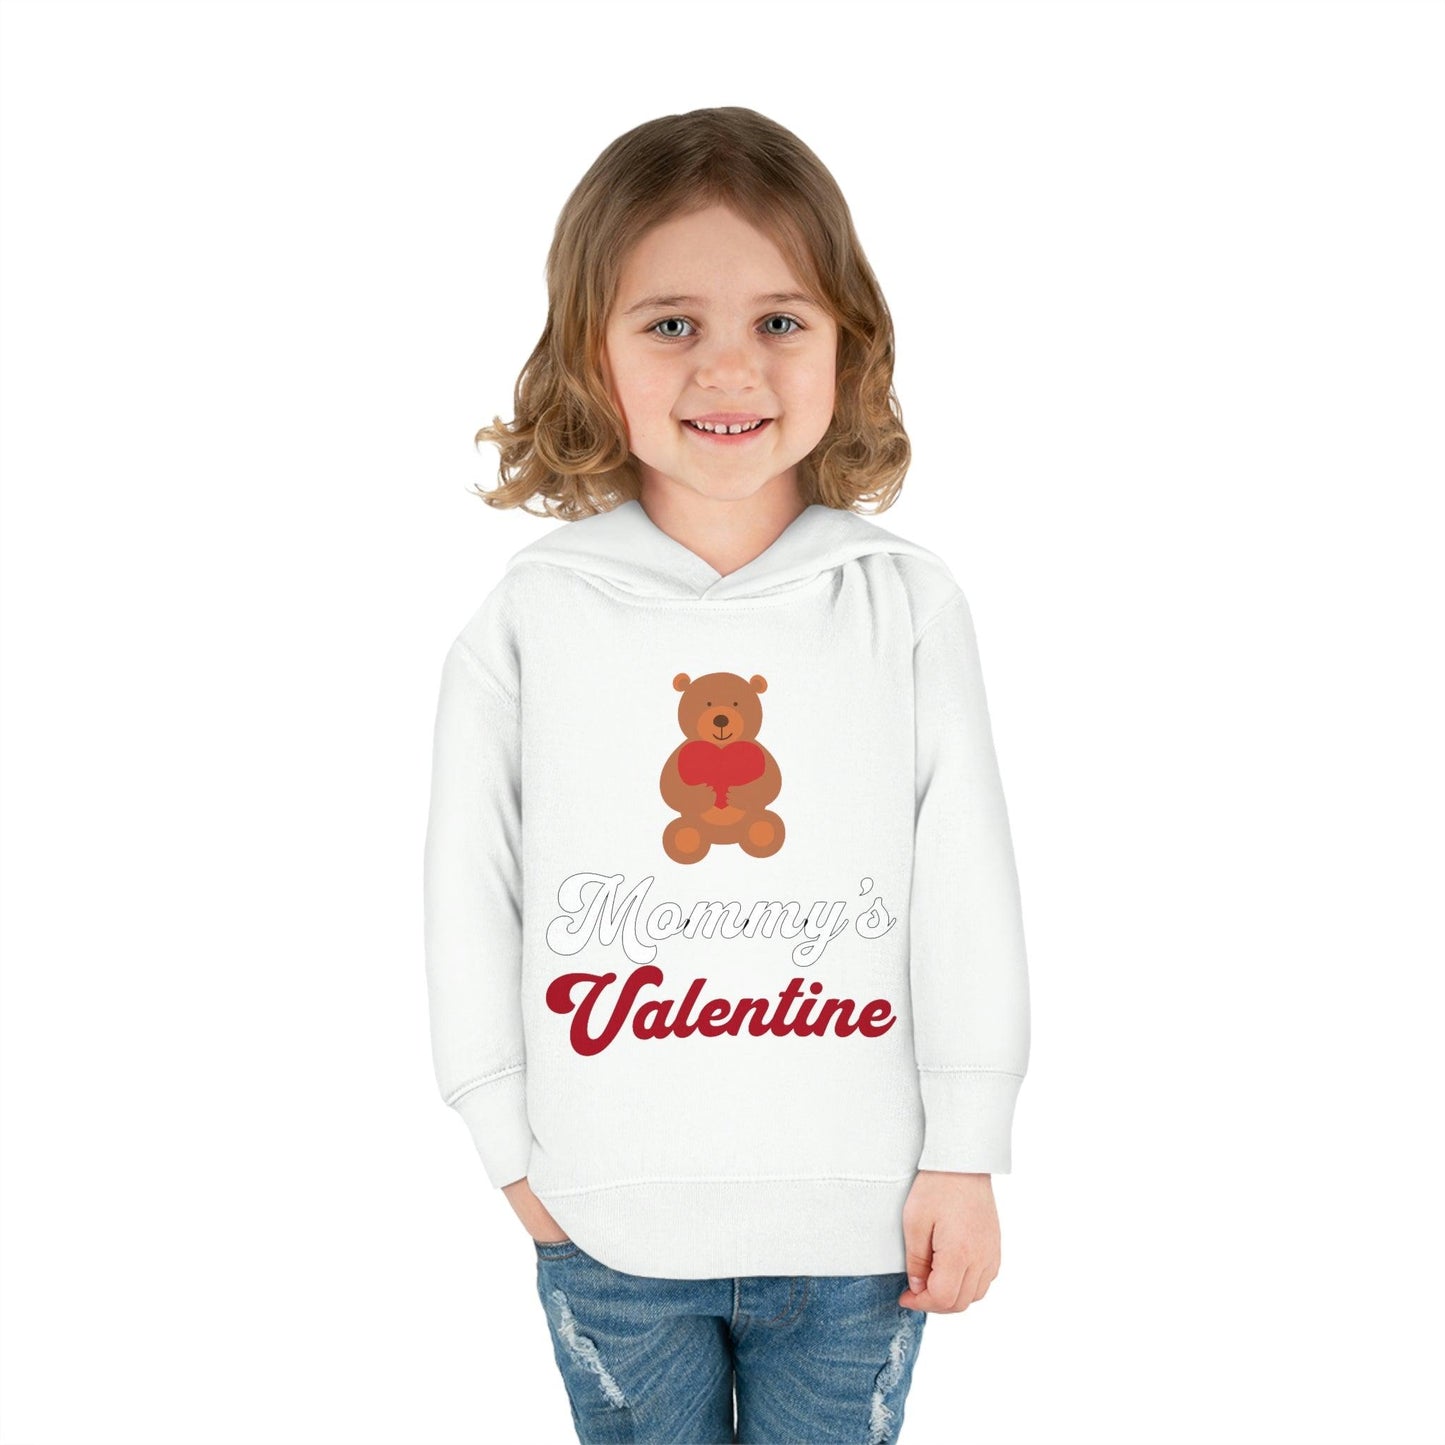 Mommy's Valentine - Custom Kids Valentines Day Sweatshirt - Giftsmojo